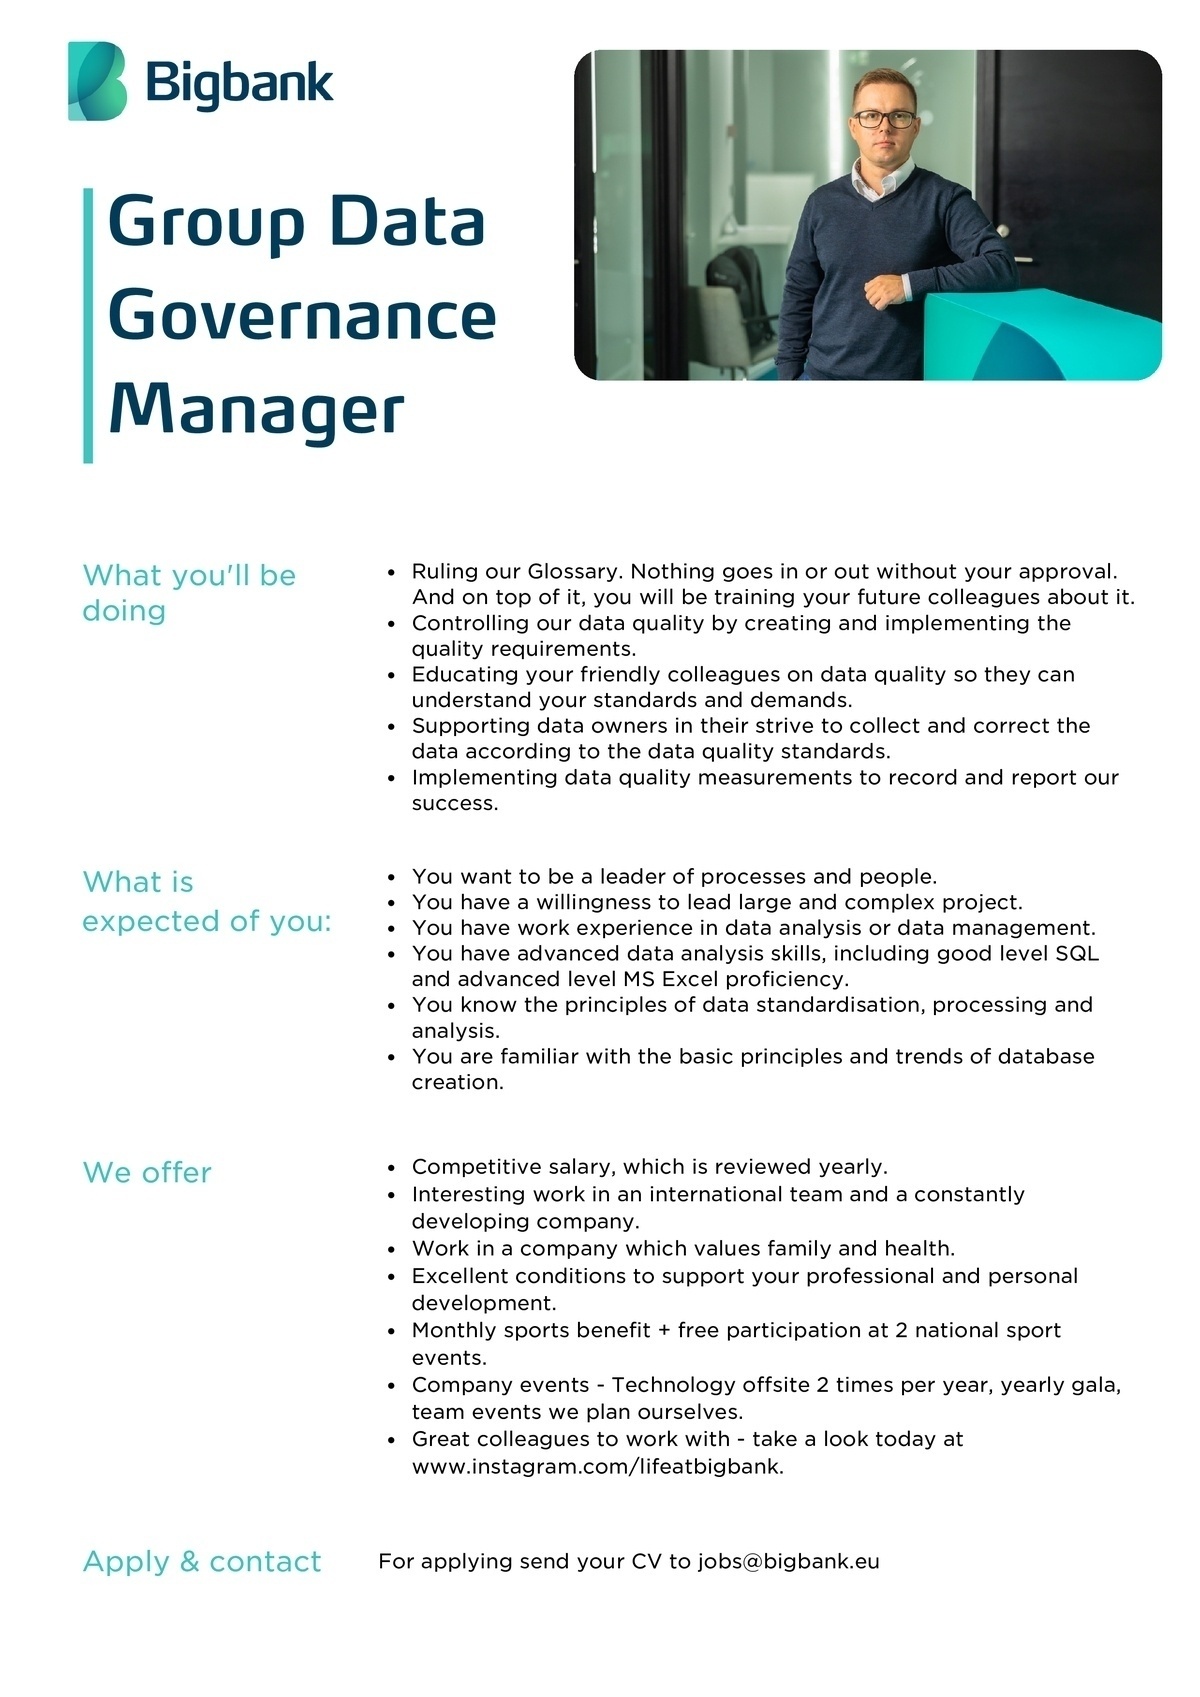 BIGBANK AS Group Data Governance Manager